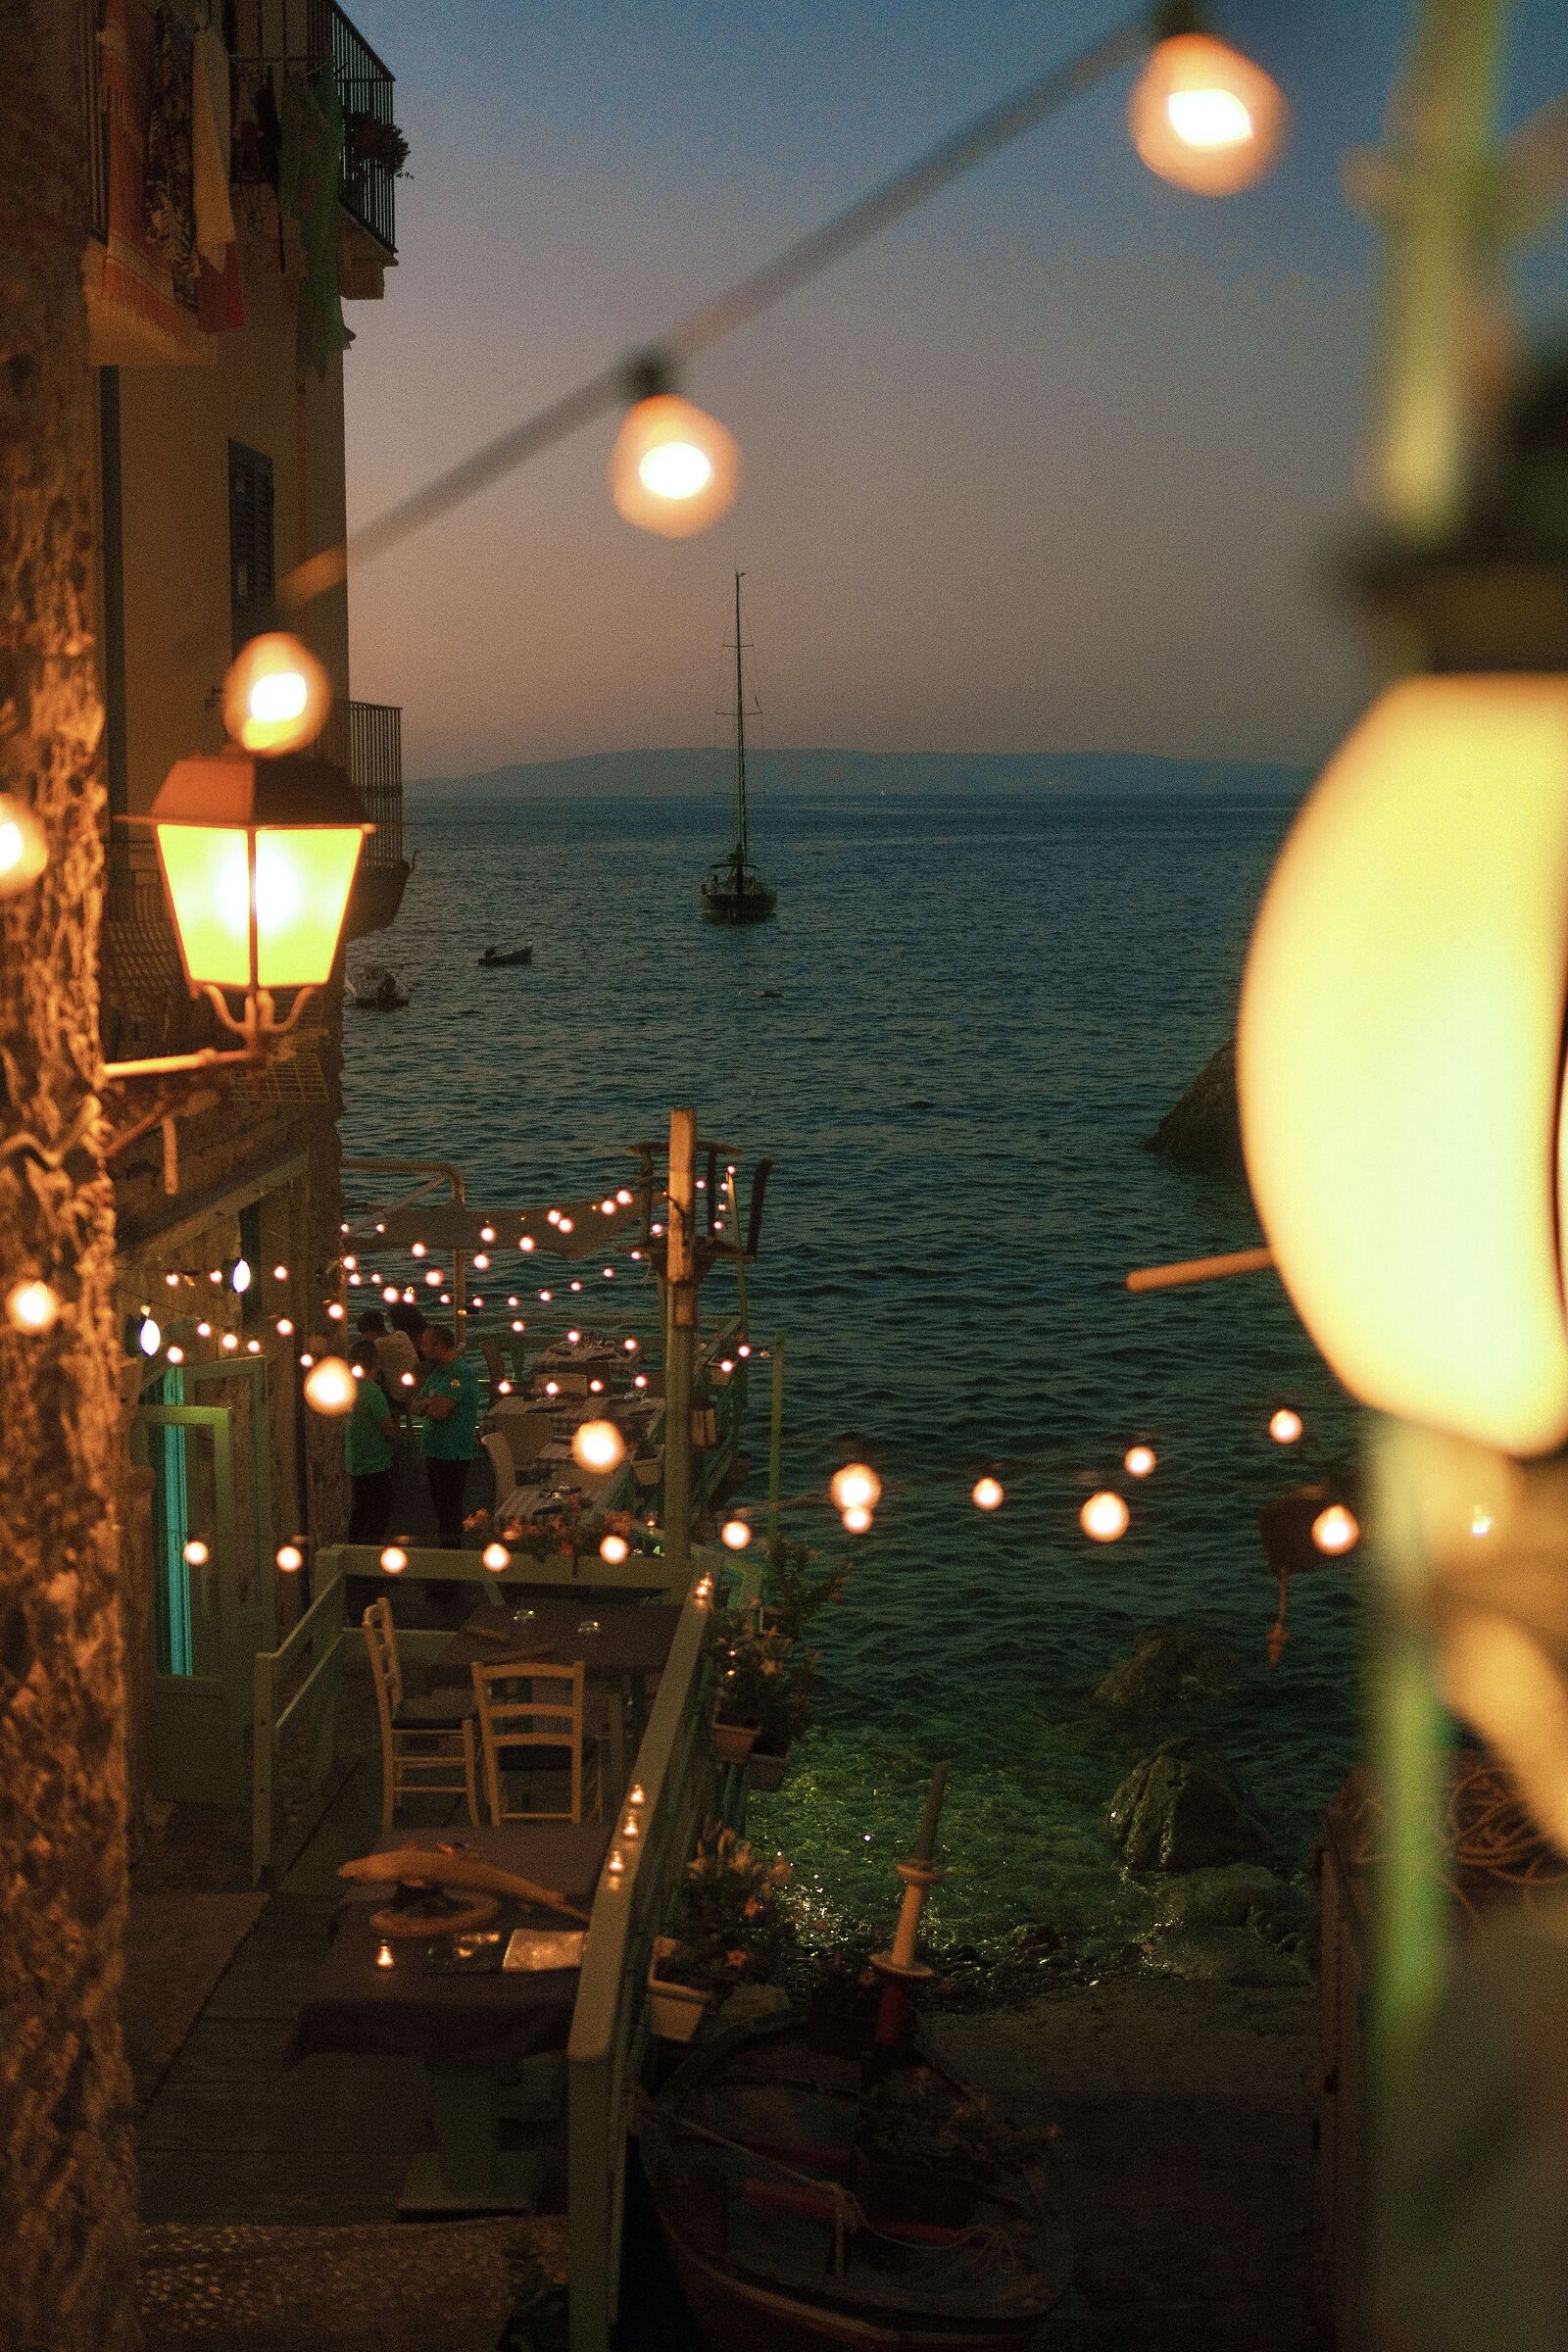 Lights on the sea...